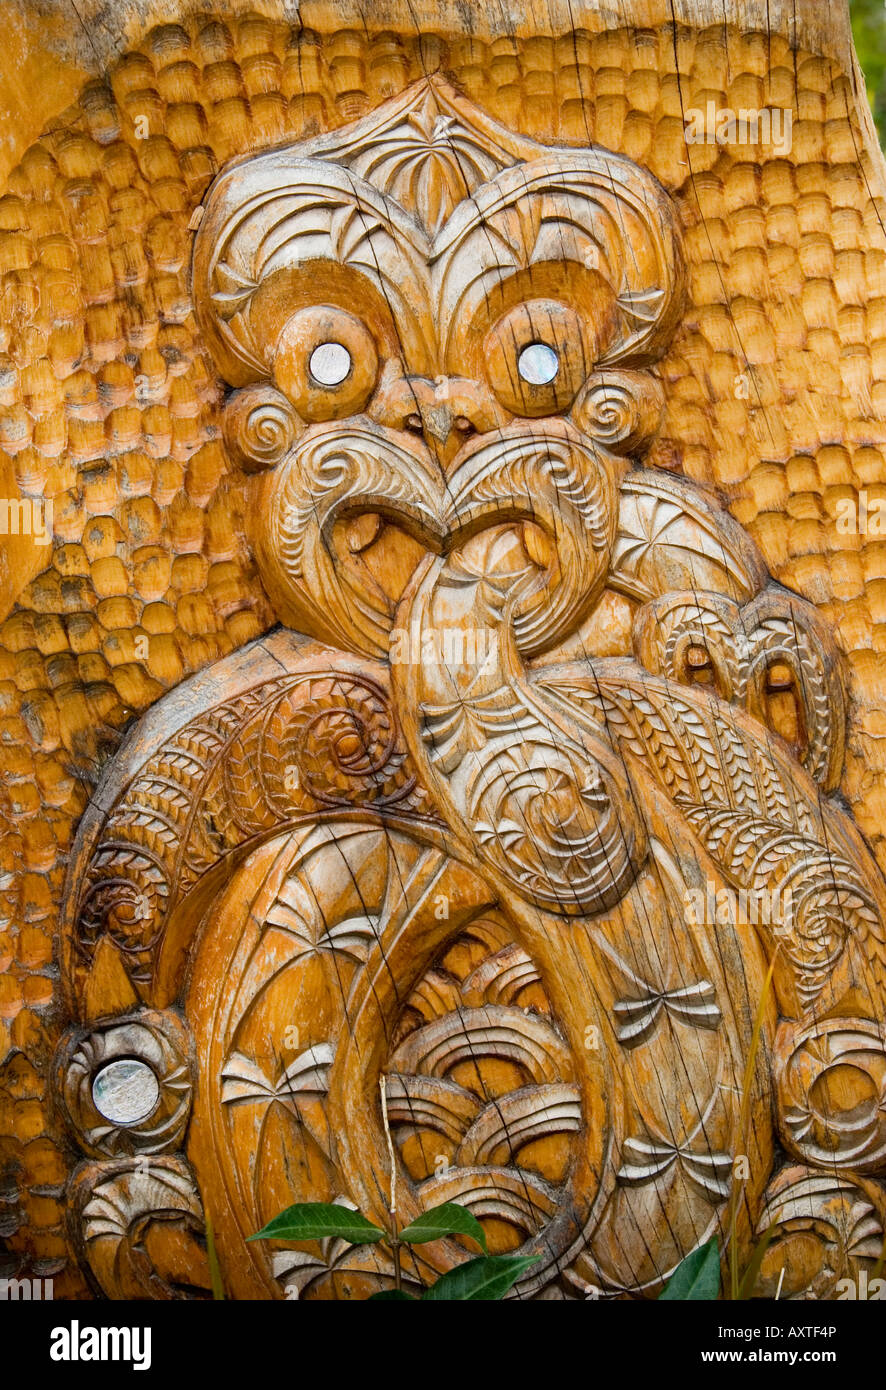 New Zealand Maori Carvings